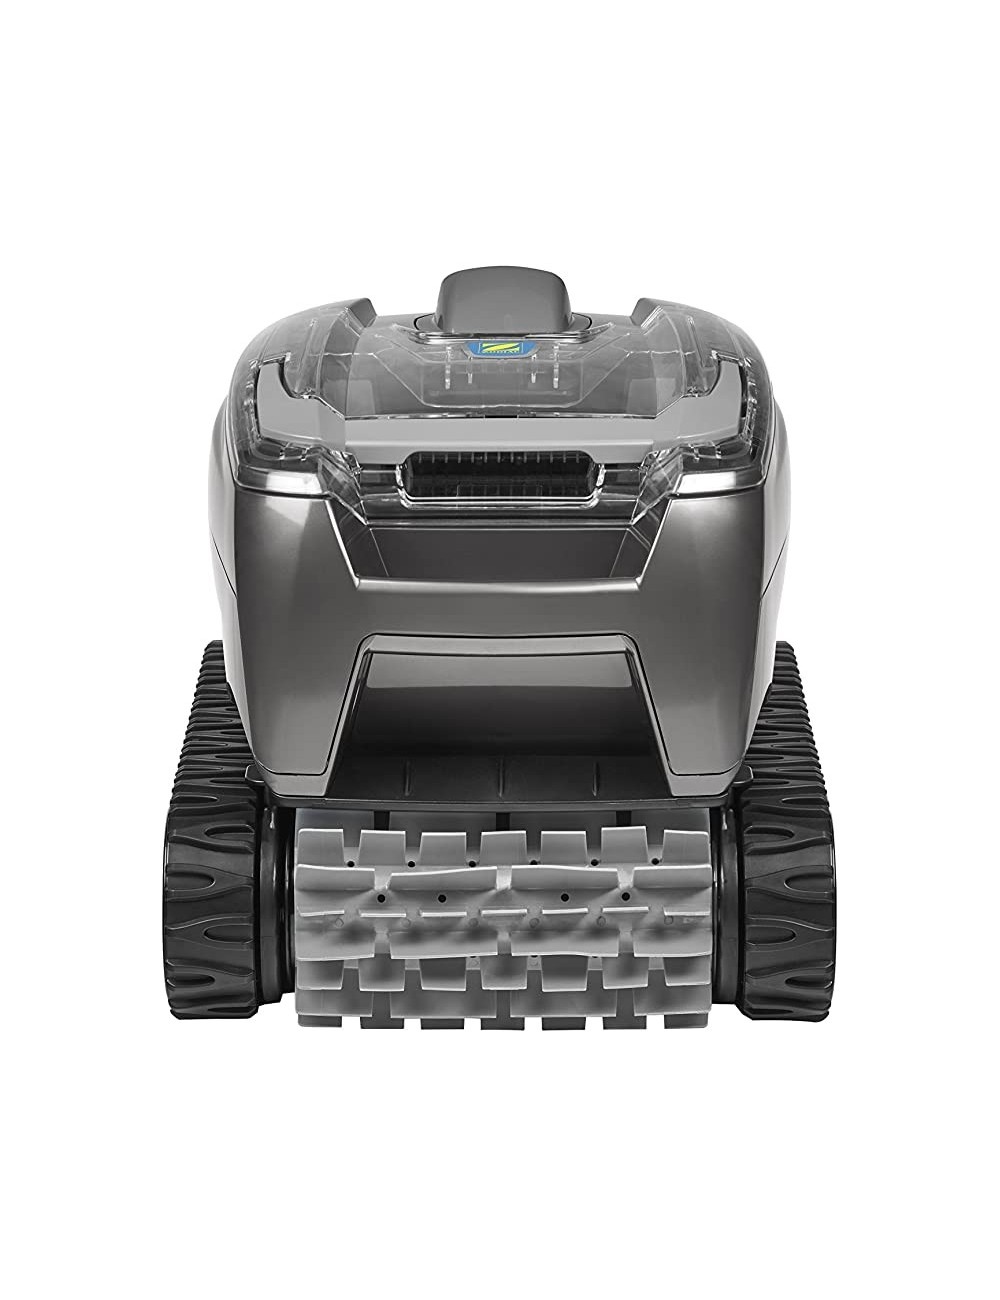 Robot Piscina Zodiac Tornax OT 3200 - Cavo 16,5 MT Pulizia del Fondo Piscine Interrate e Fuori Terra a Pareti Rigide